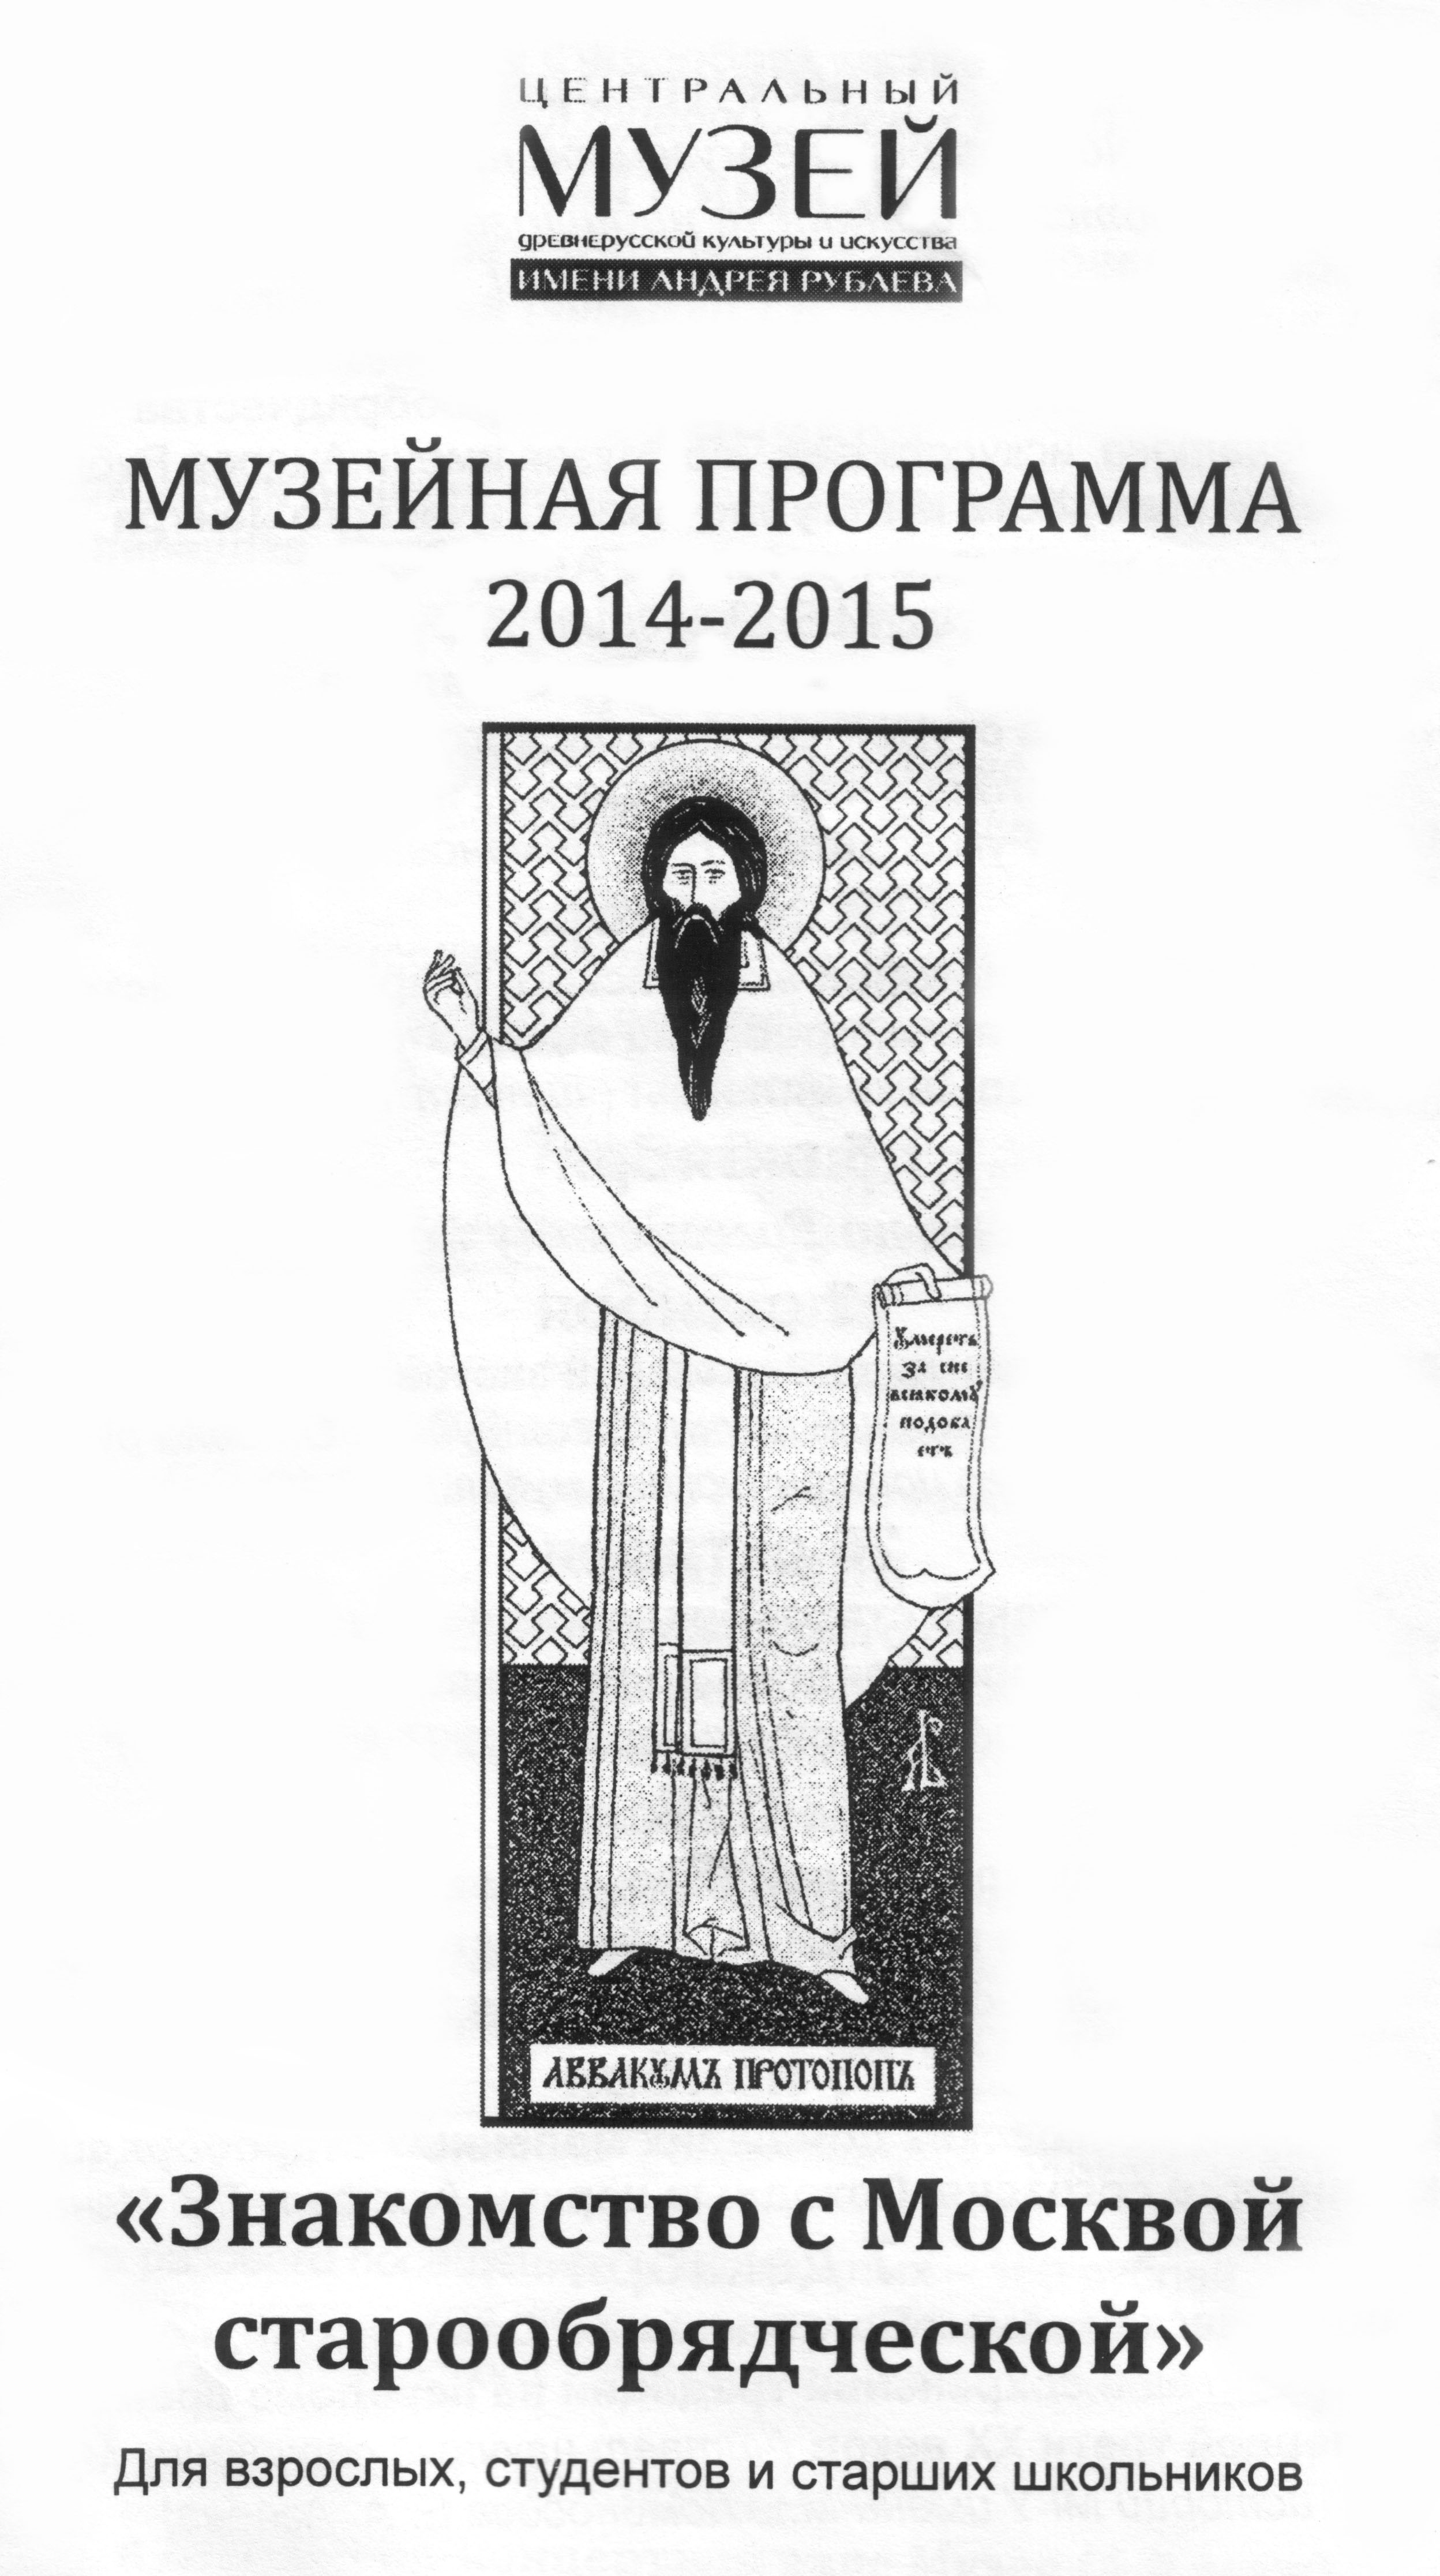 Обложка программы занятий с графической работой «Протопоп Аввакум» епископа Алимпия (Вербицкого)